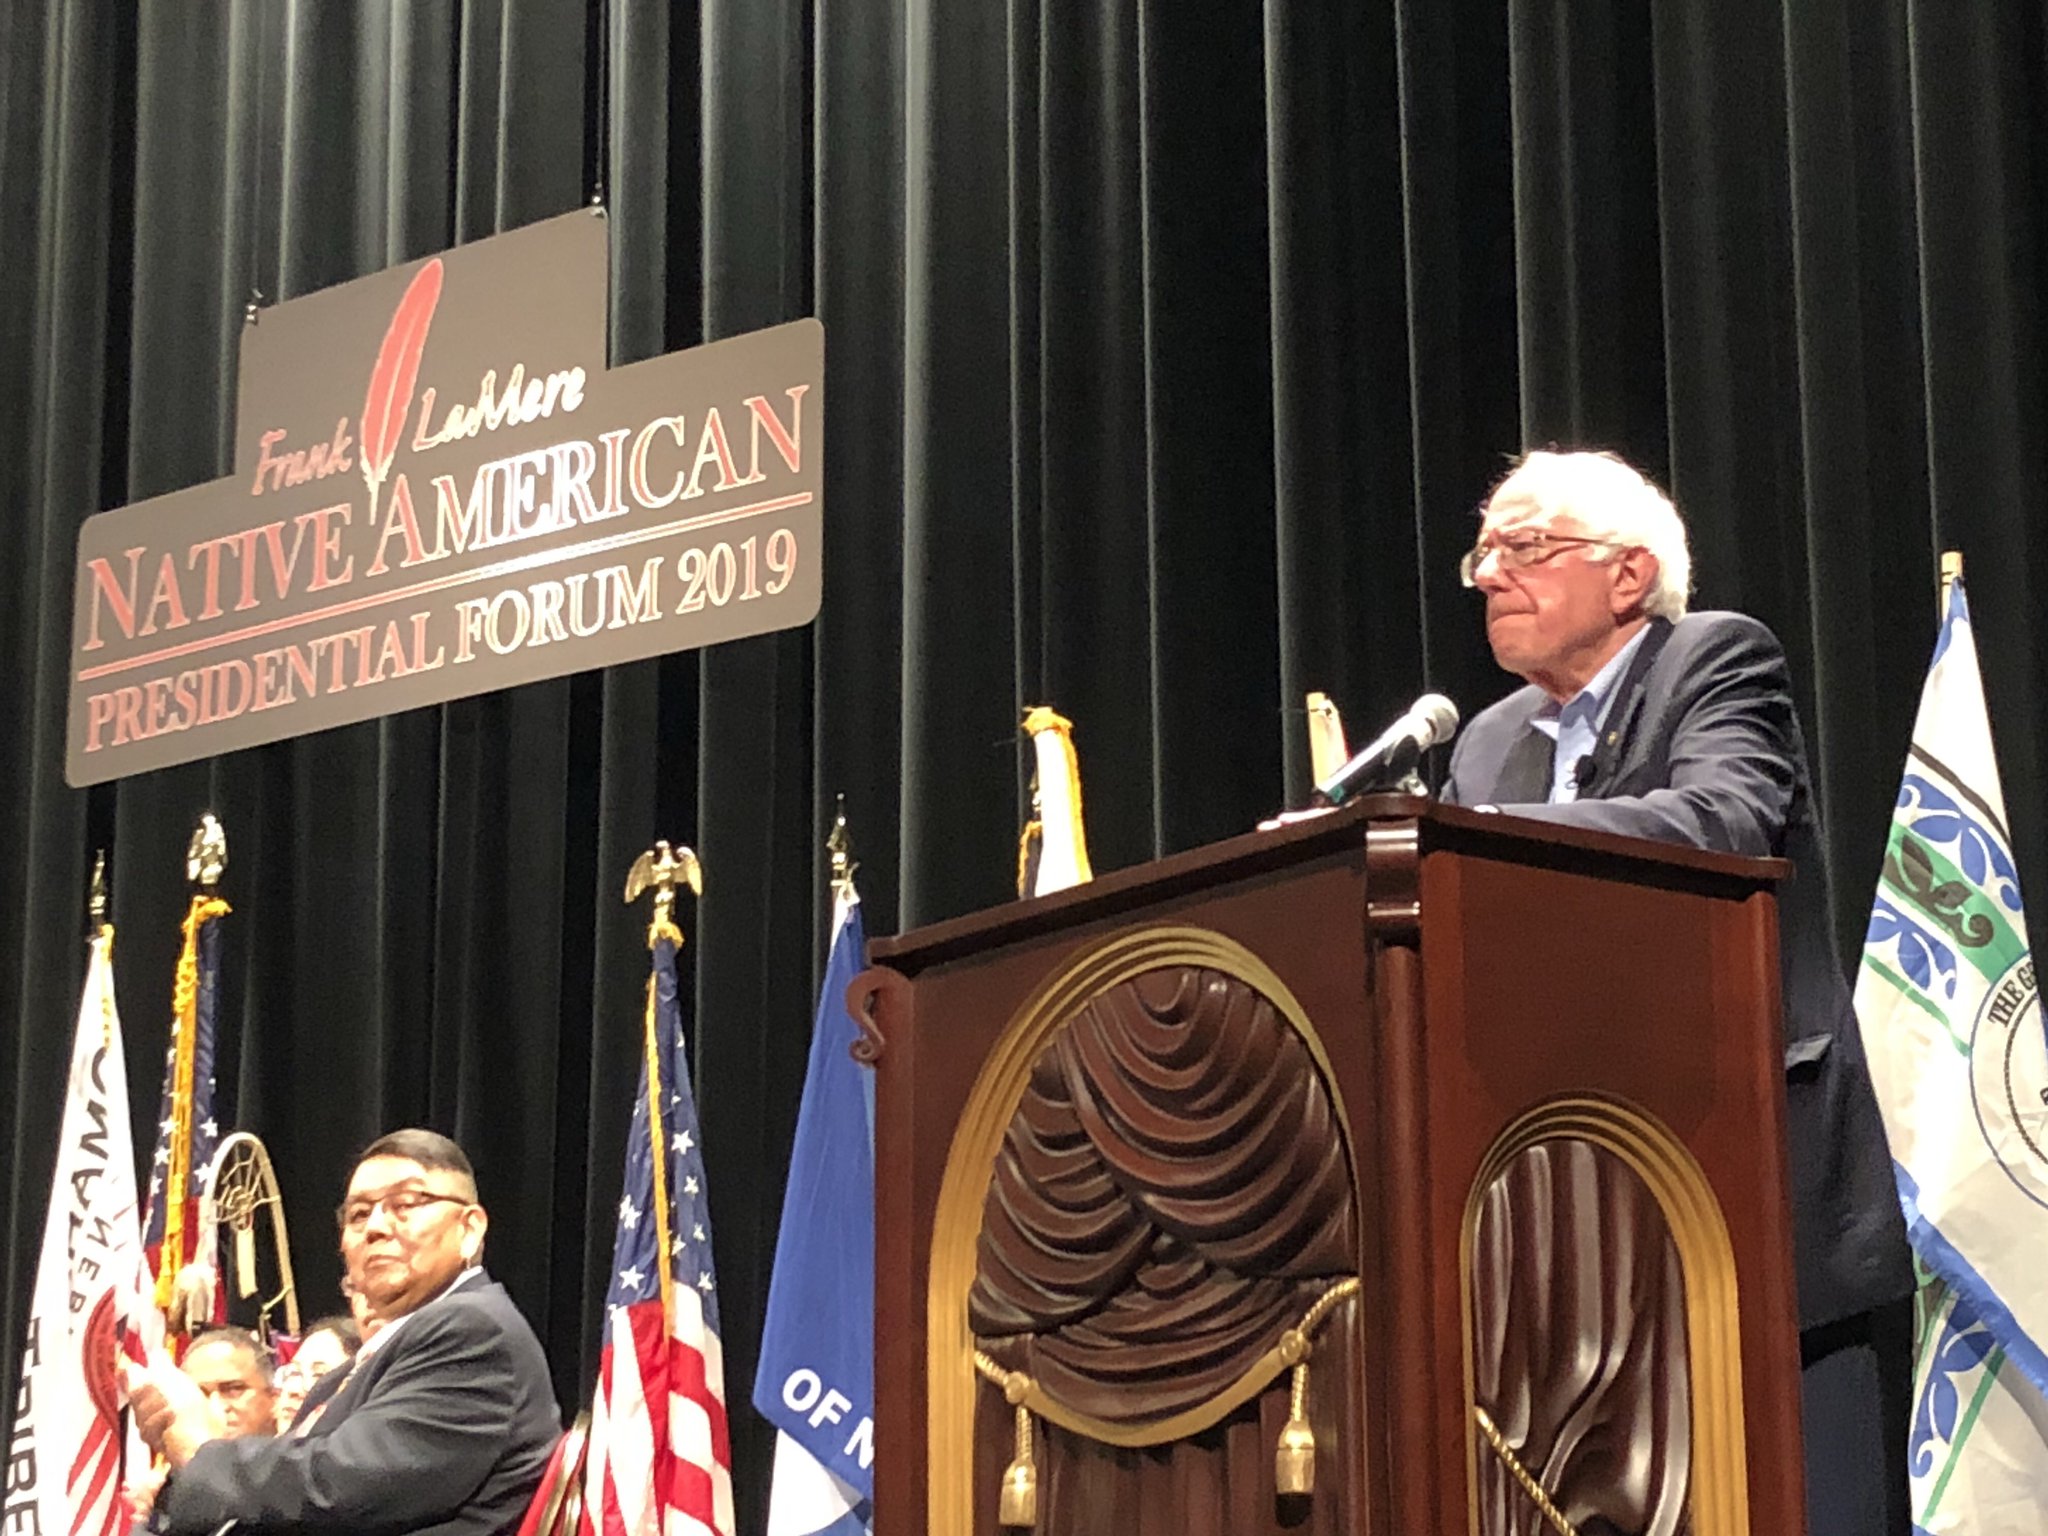 AUDIO/VIDEO: Bernie Sanders at Frank LaMere Native American Presidential Forum